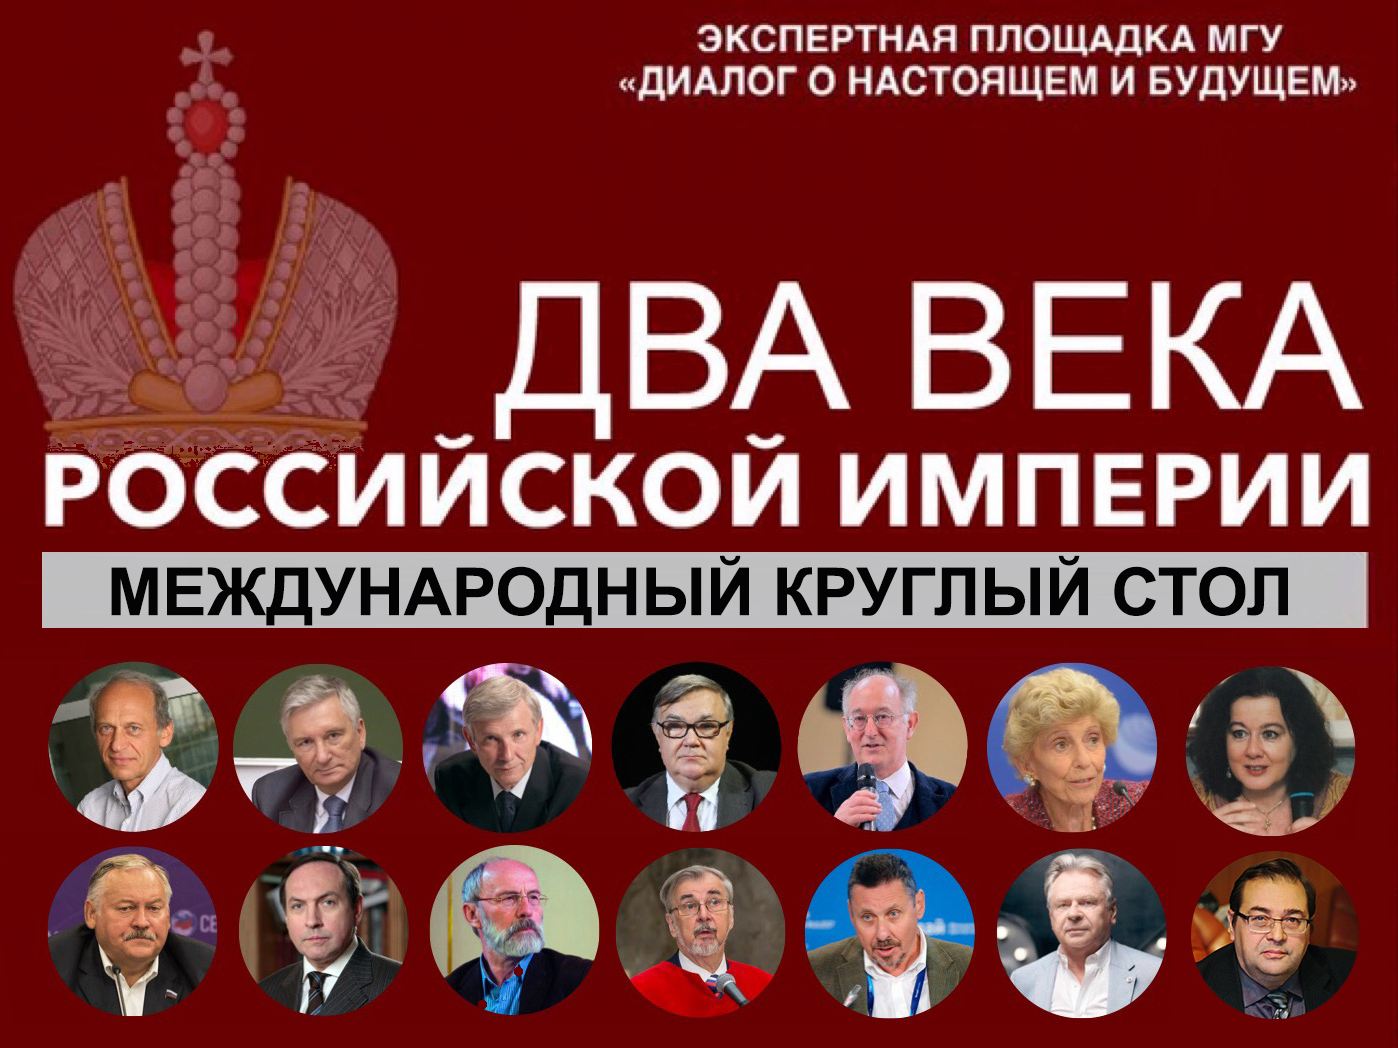 Международный круглый стол "Два века Российской империи"